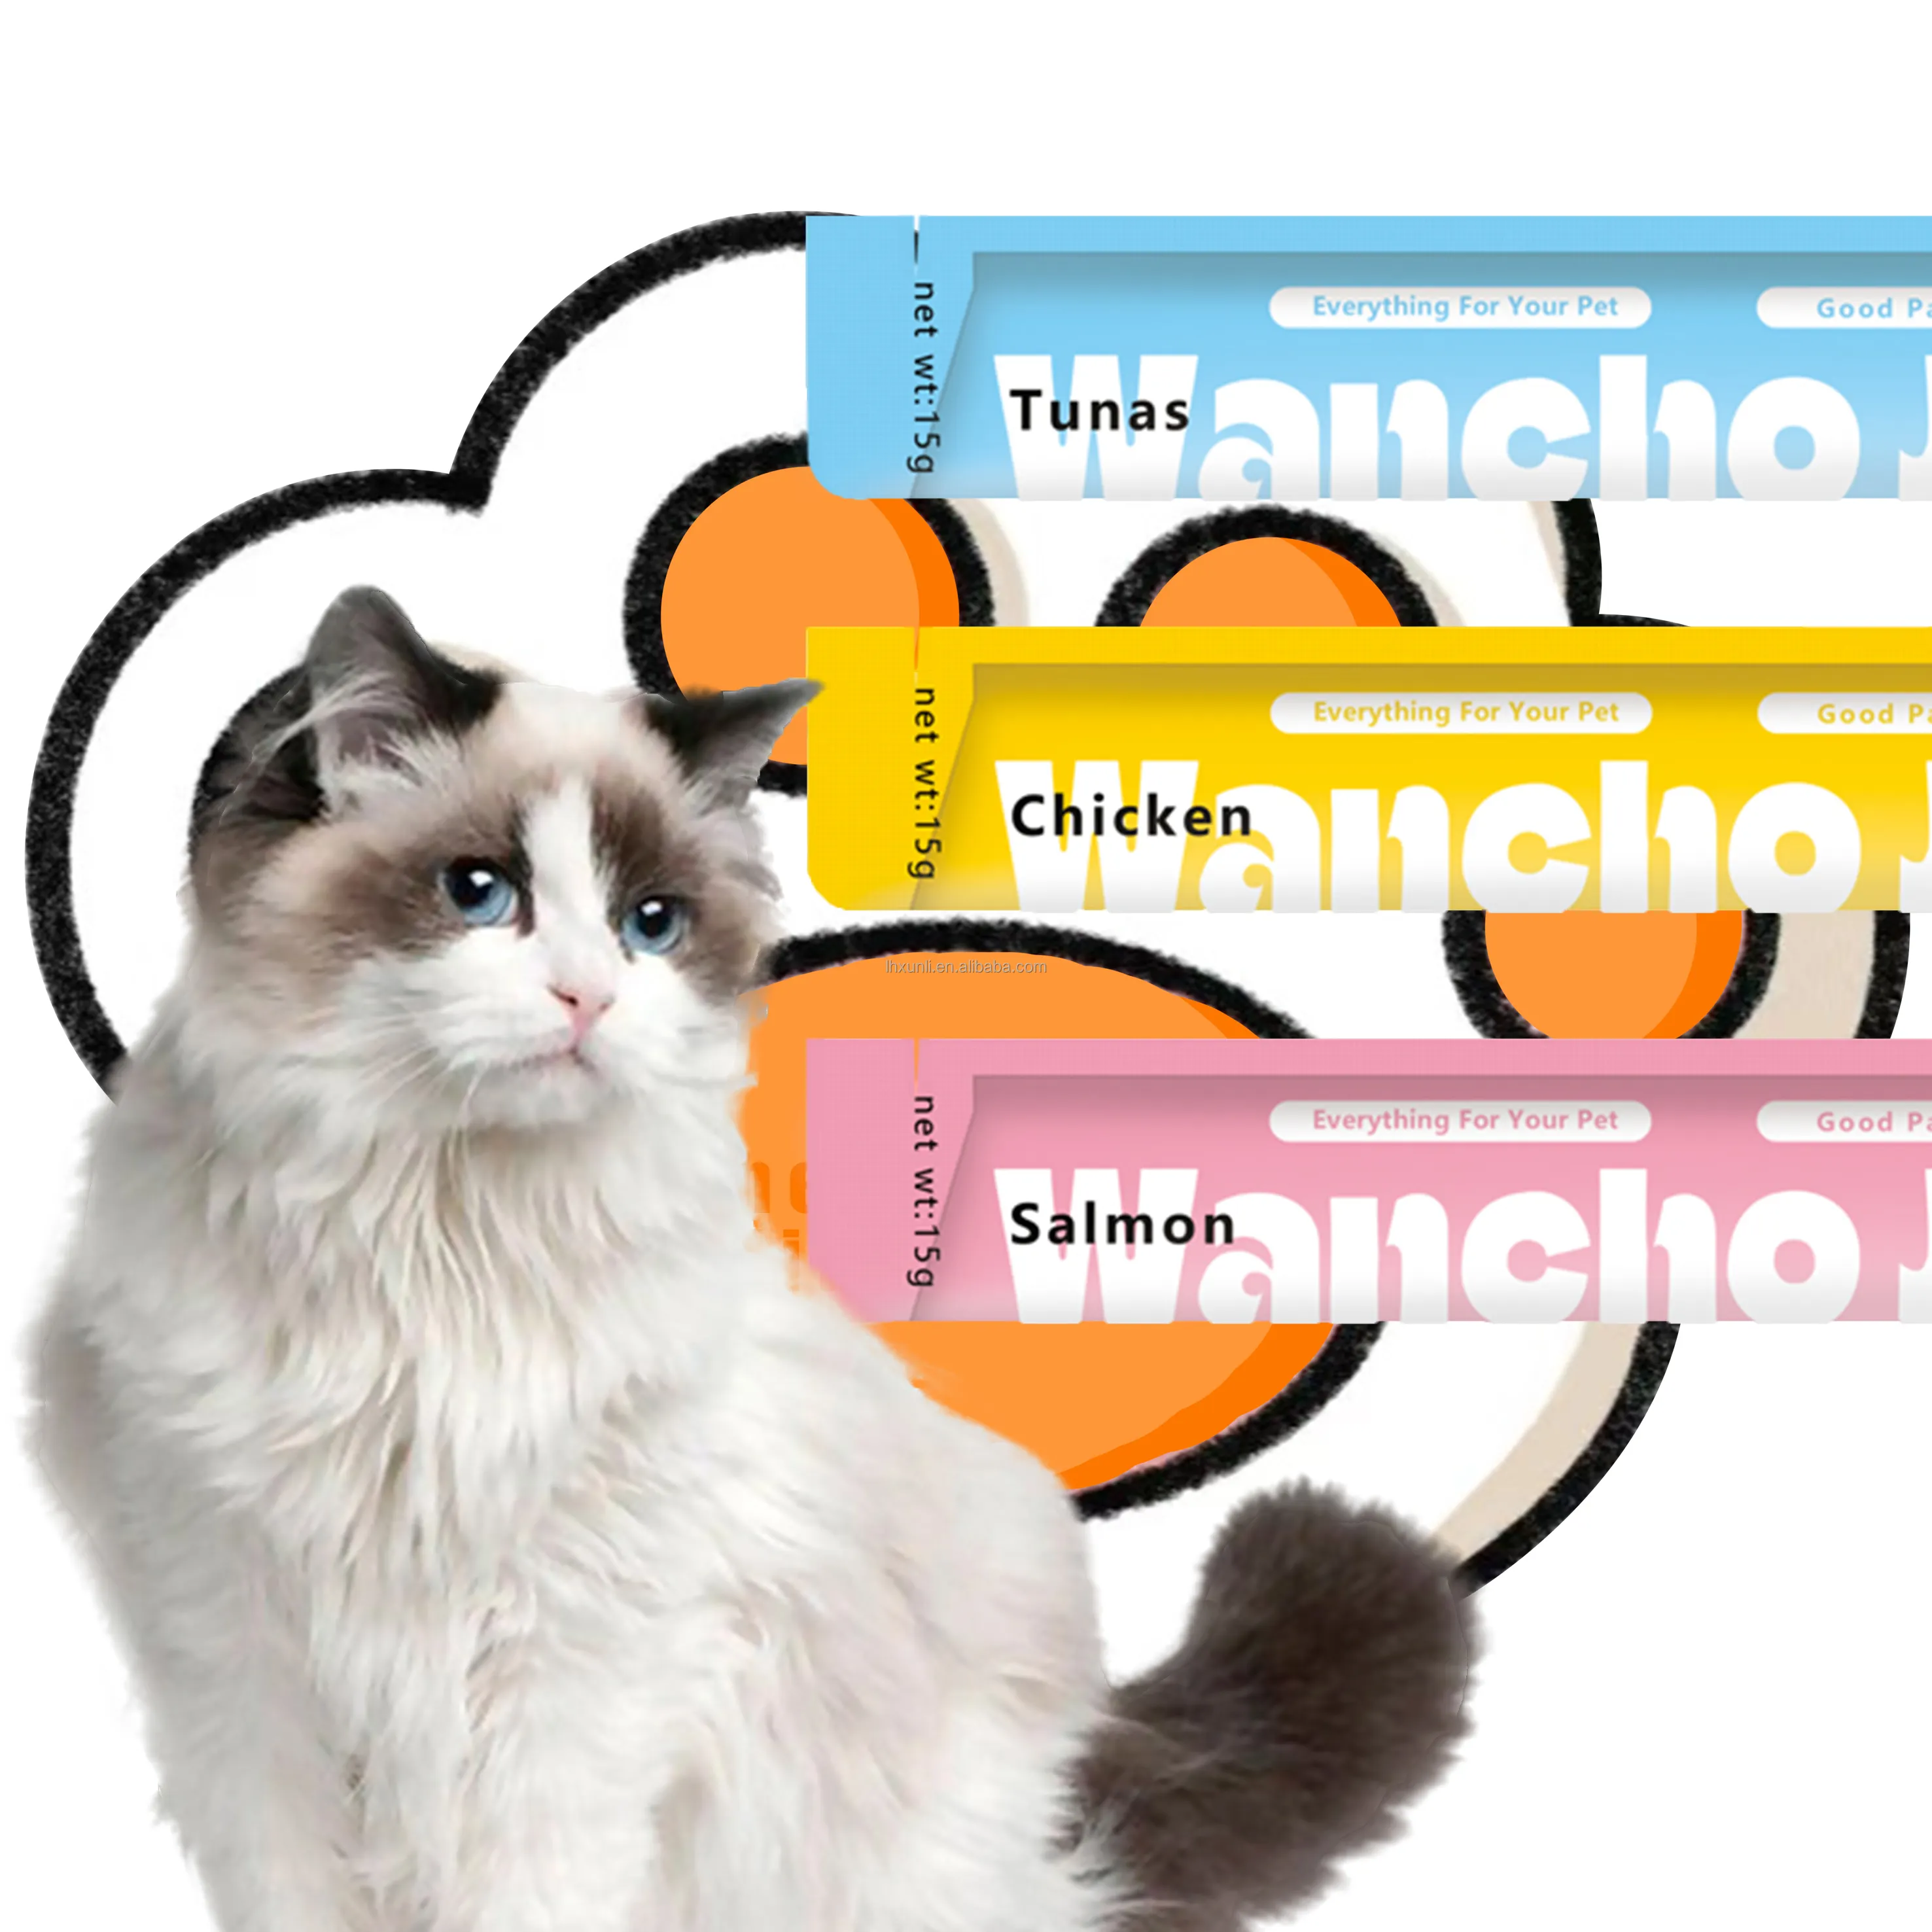 Cat wet food creamy lickable cat treats 15g chicken tuna salmon flavor 50% Meat content